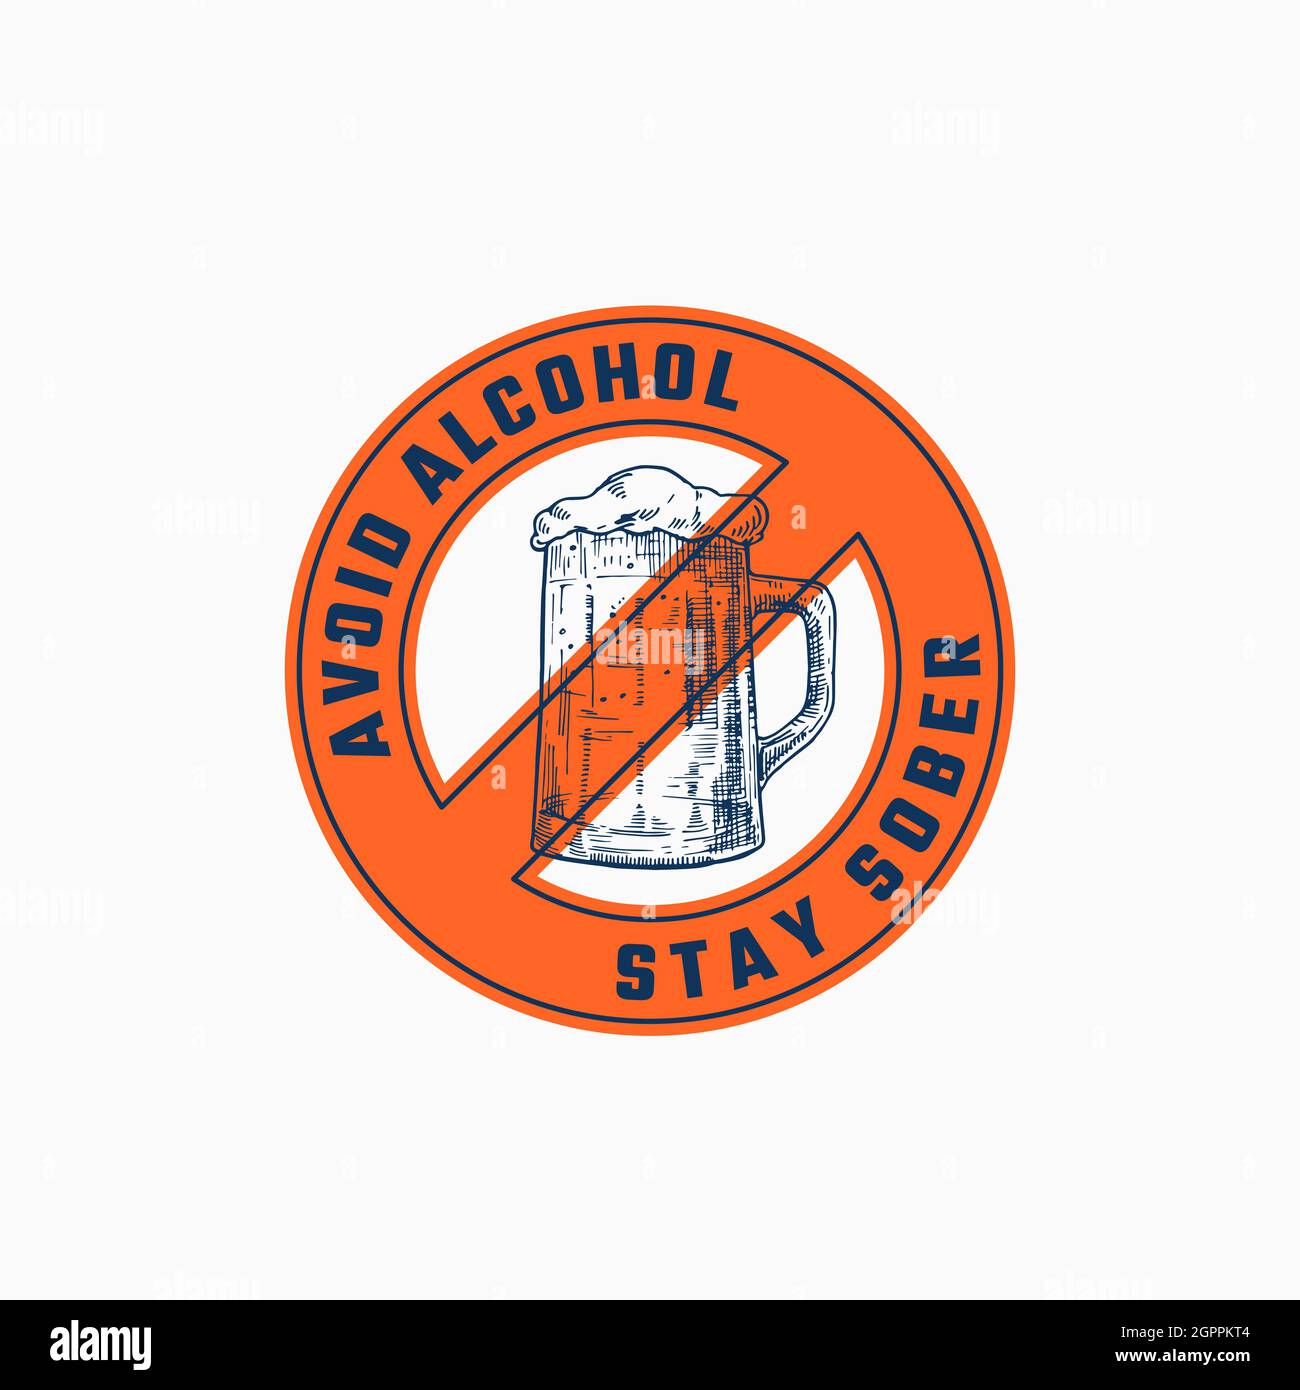 Vermeiden Sie Alkohol abstrakte Vektor-Zeichen, Symbol oder Logo-Vorlage. Handgezeichneter Bierbecher Skizze Illustration mit Typografie in einem Rahmenabzeichen. Bleibt Nüchtern Stock Vektor